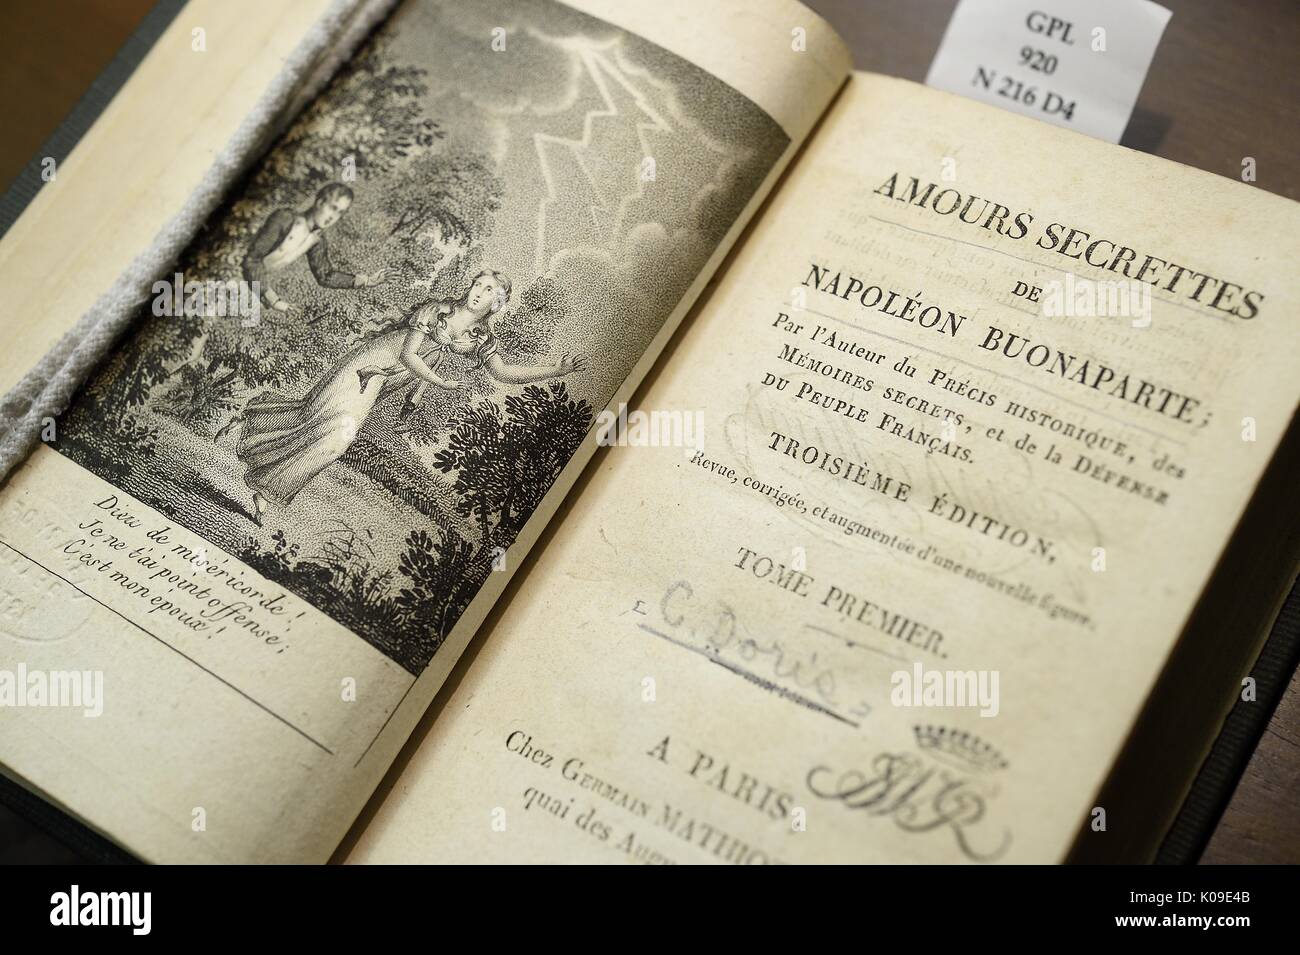 Foto di un libro aperto su una pagina è una illustrazione e sugli altri è il titolo Amours Secrettes da Napoleone Buonaparte, 11 febbraio 2016. Foto Stock